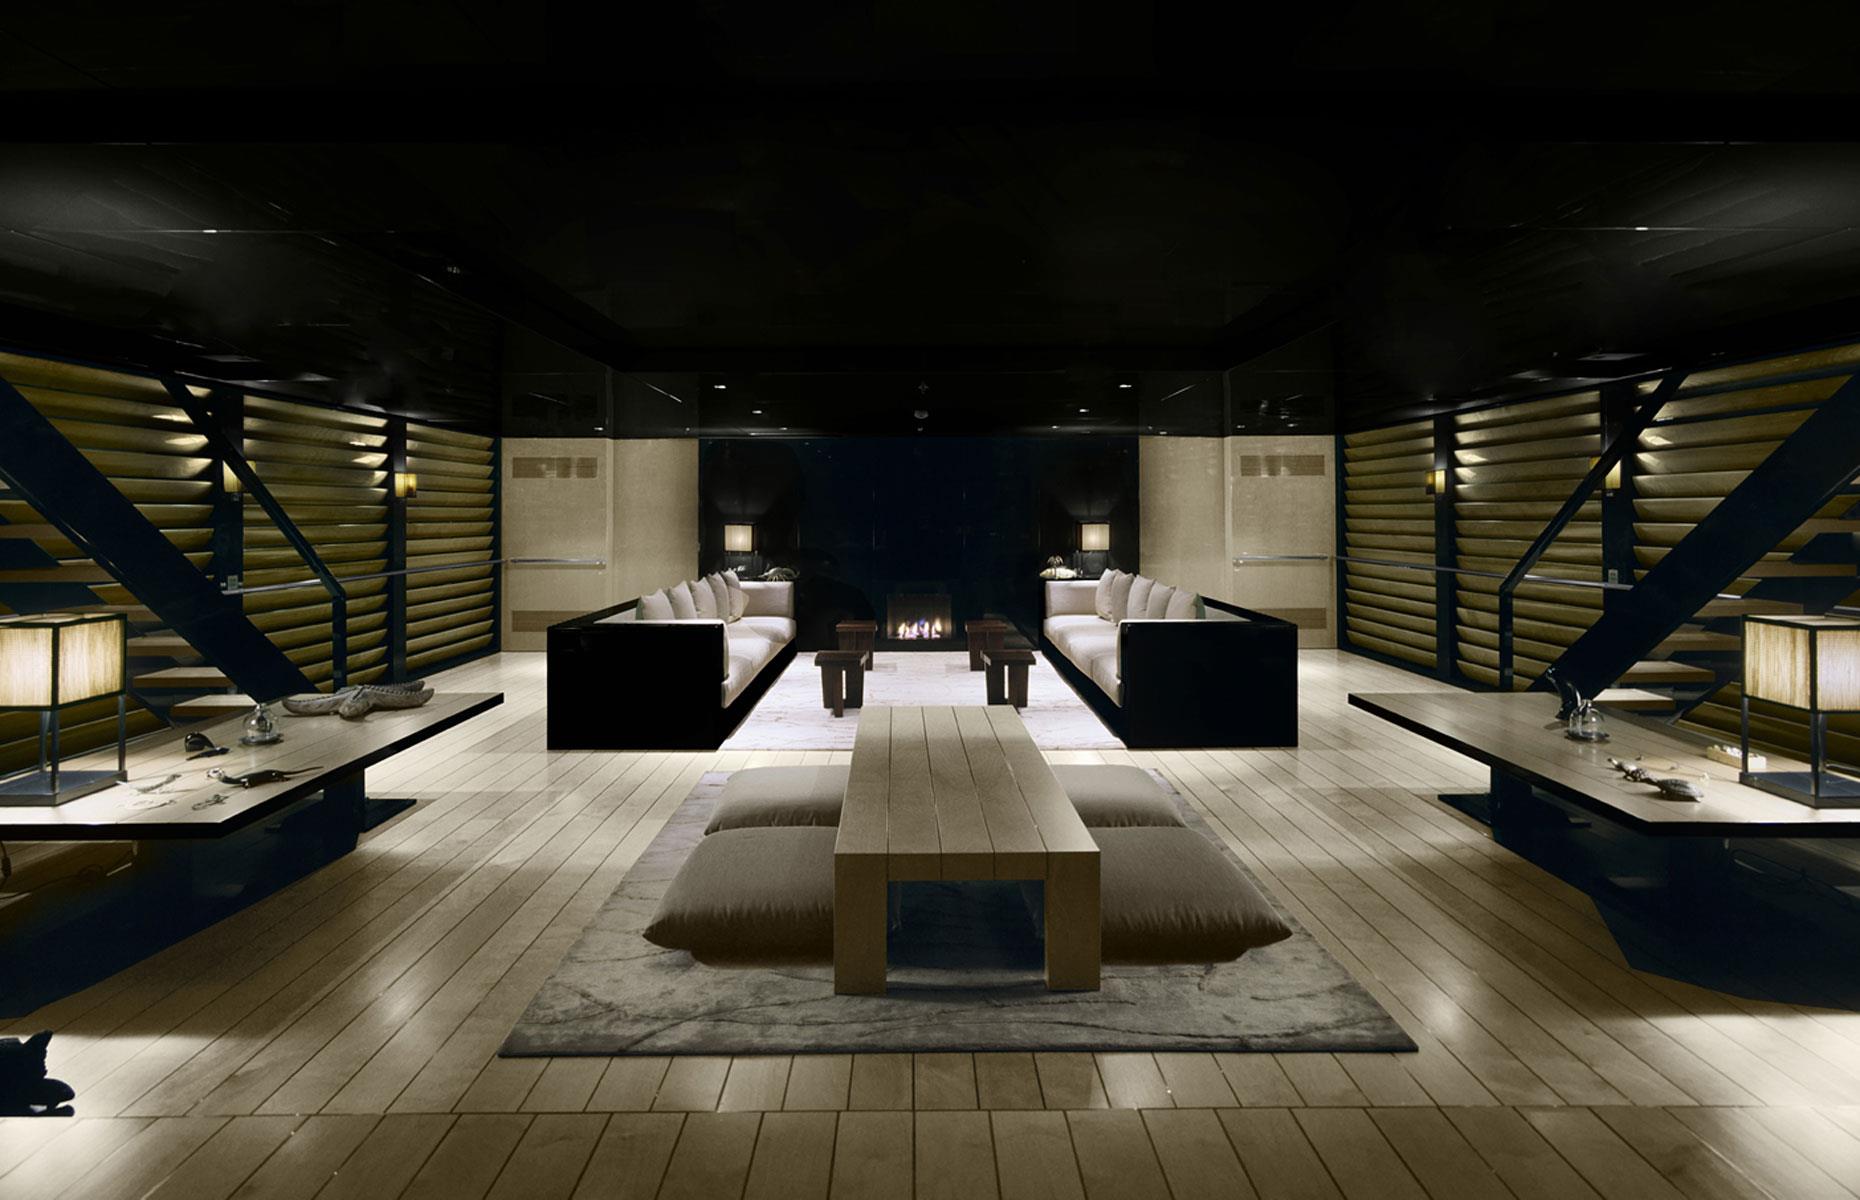 <p>Wie Gabbana beauftragte auch Armani die Werft Codecasa mit dem Bau der 65 Meter langen Superyacht und der Stardesigner beteiligte sich maßgeblich an dem Entwurf des Schiffes. 2008 wurde die „Maìn” – benannt nach dem Spitznamen von Armanis Mutter aus Kindertagen – zu Wasser gelassen.</p>  <p>Auch im Innenraum und auf den Decks findet sich Armanis typischer Look: ein minimalistischer Stil, der mit dunklen und neutralen Tönen kombiniert wird. Möbliert ist das Schiff mit Armanis eigener Marke.</p>